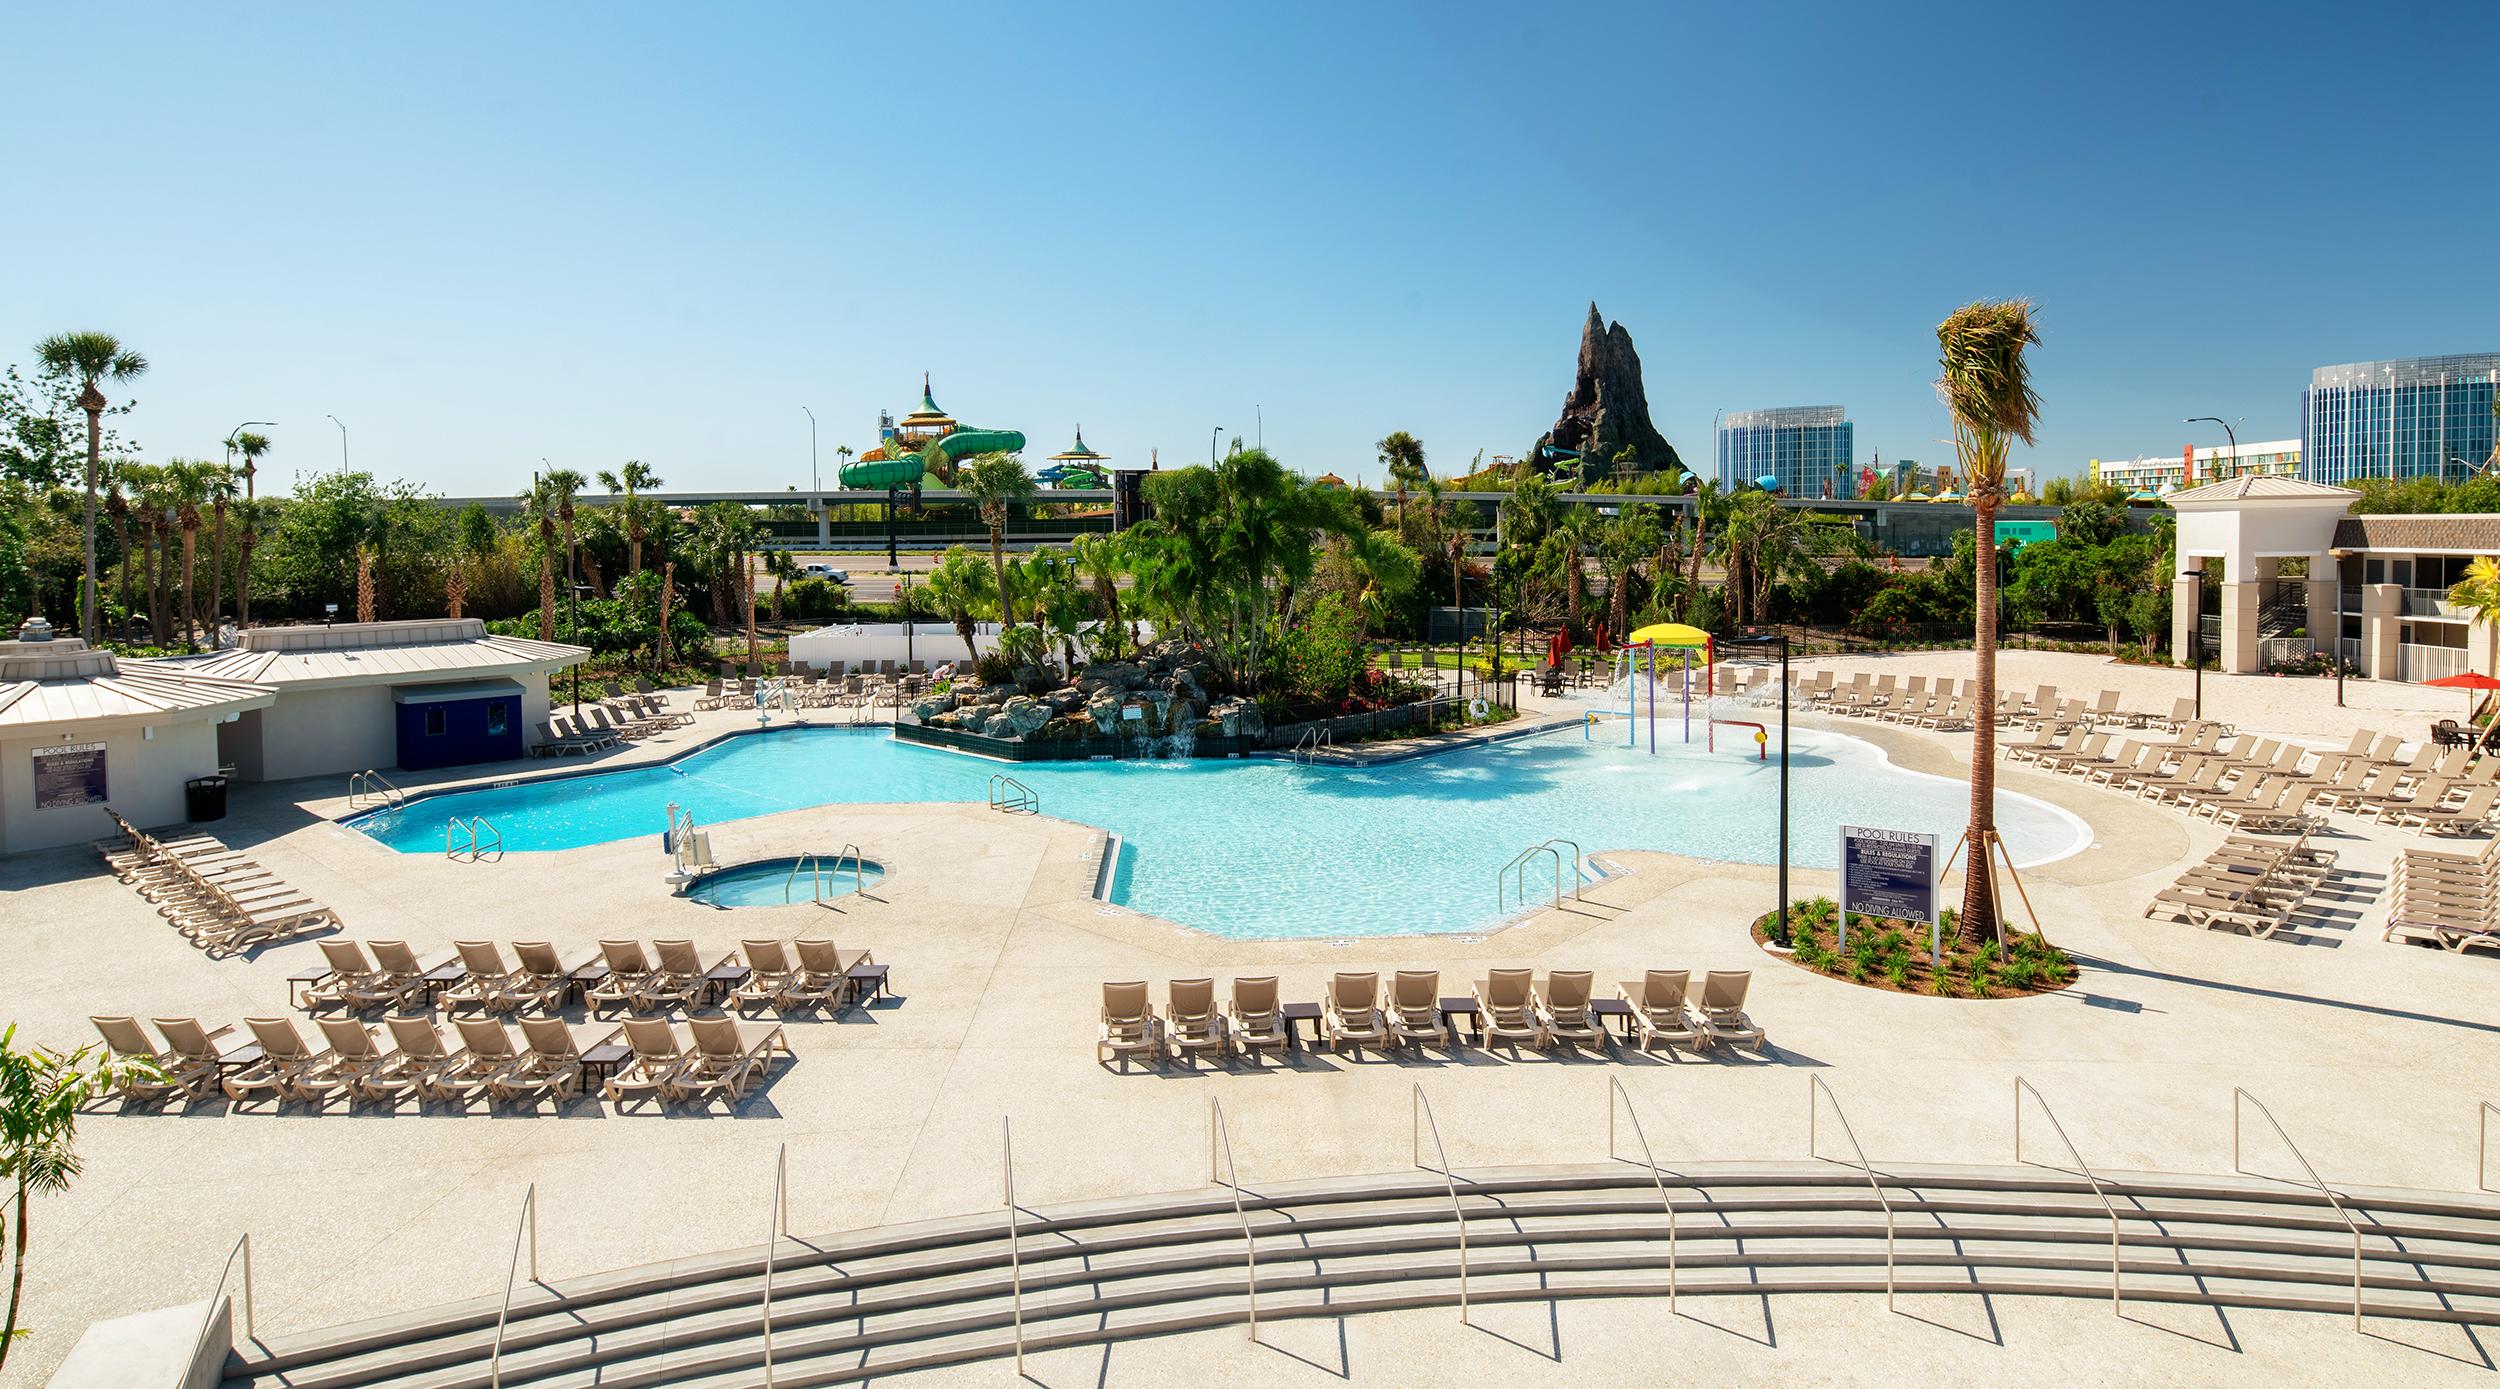 Avanti Palms Resort And Conference Center Orlando Servizi foto